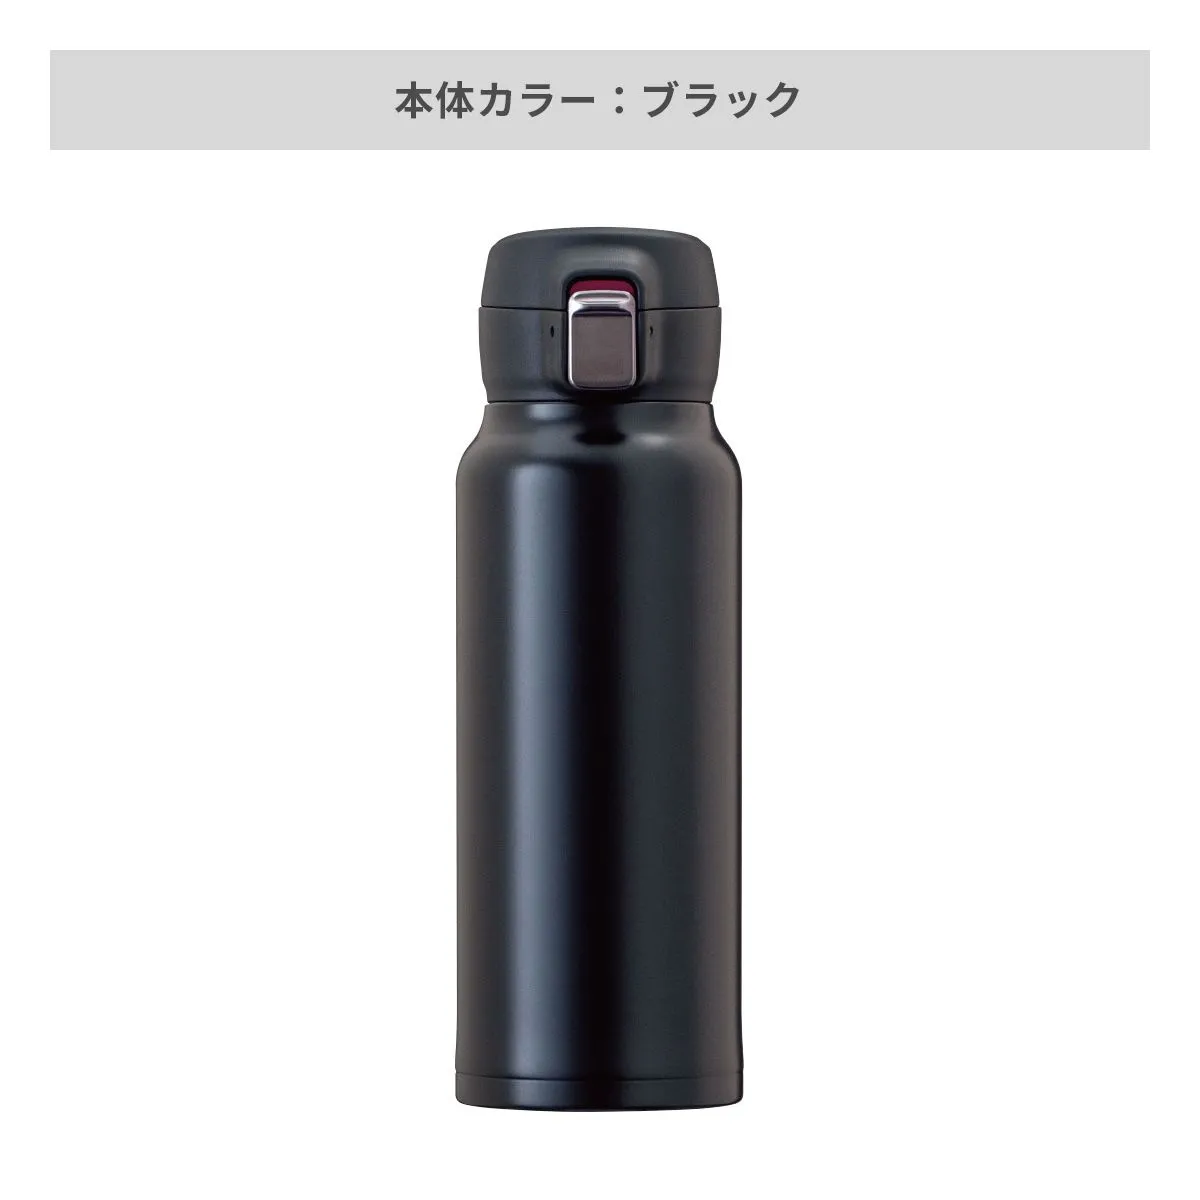 エアリスト 分解できる超軽量ワンタッチボトル 620ml【オリジナルステンレスボトル / 回転シルク印刷】 画像5